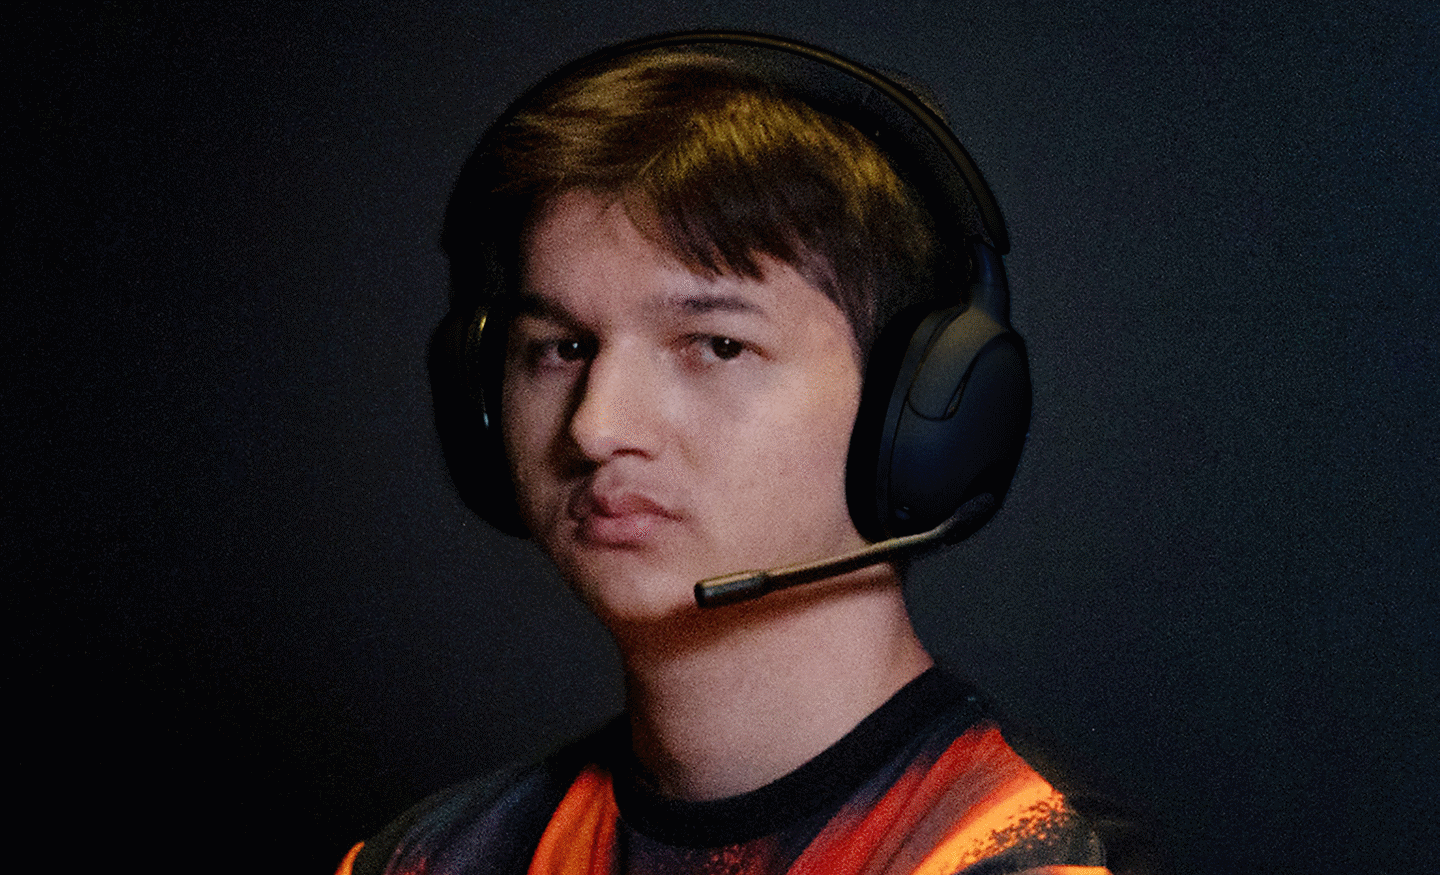 Profilna slika igrača Leo na kojoj nosi par crnih slušalica INZONE H5